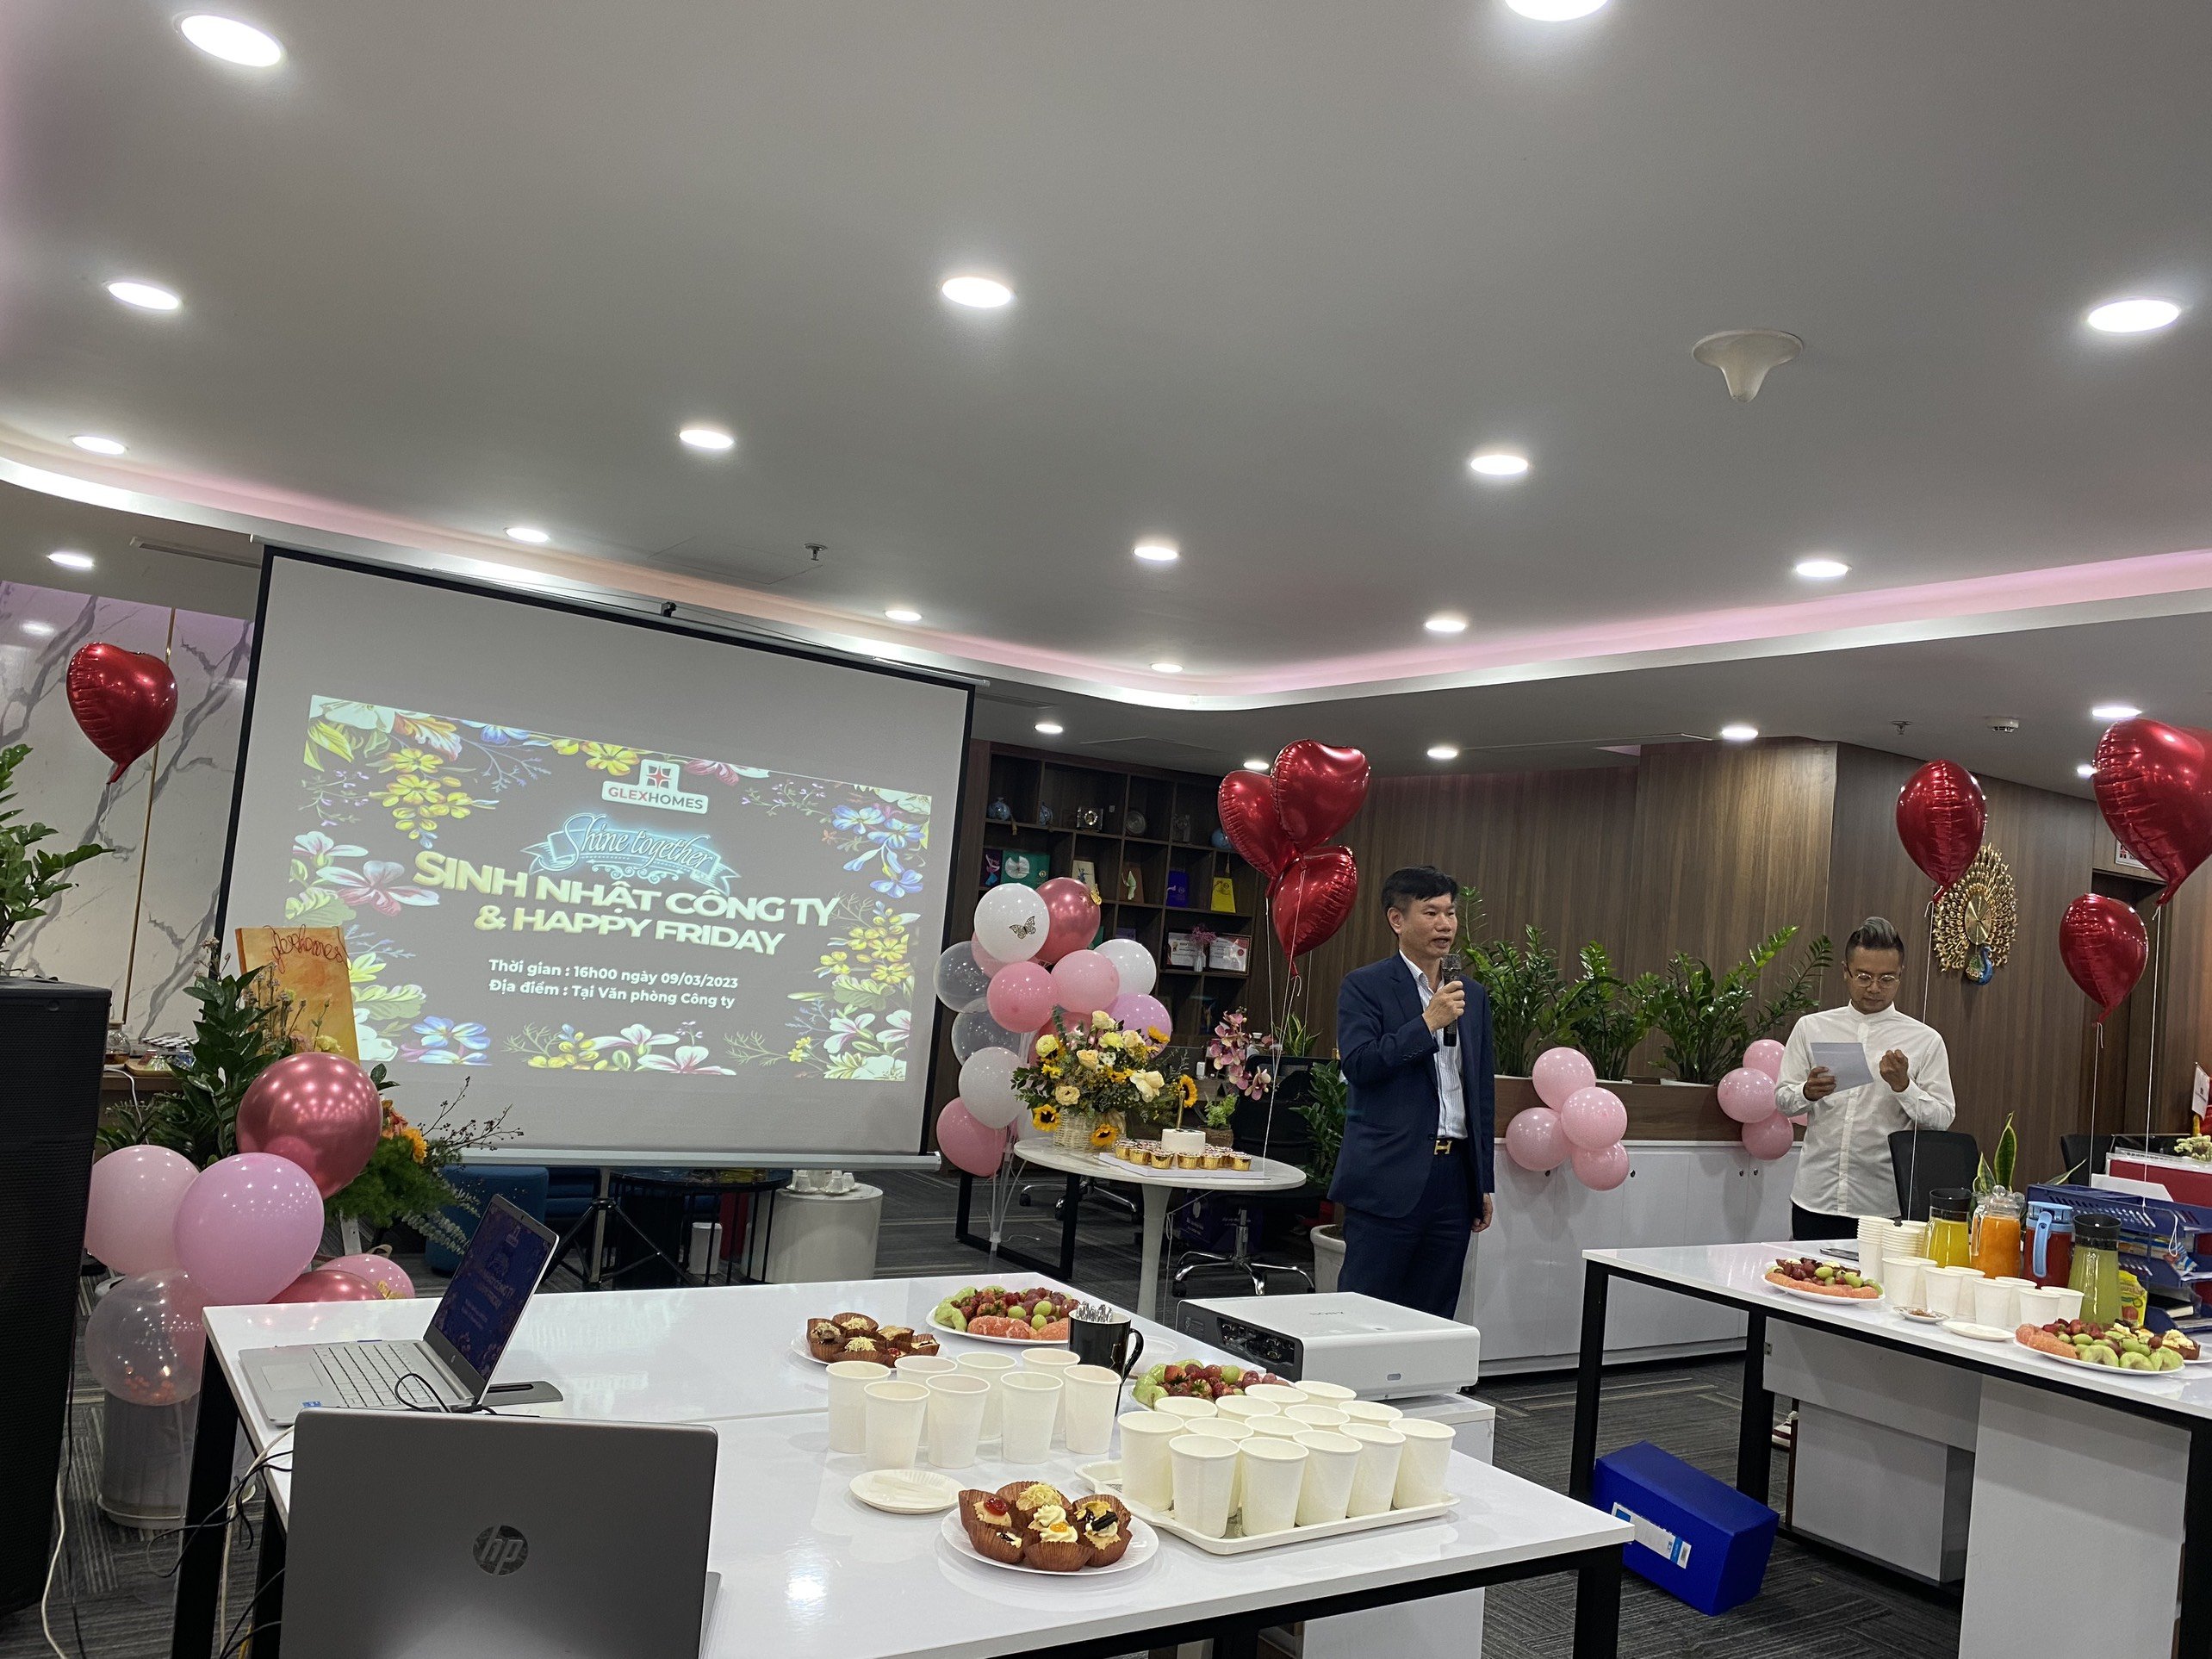 Chuỗi sự kiện Mừng sinh nhật Công ty - SHINE TOGETHER